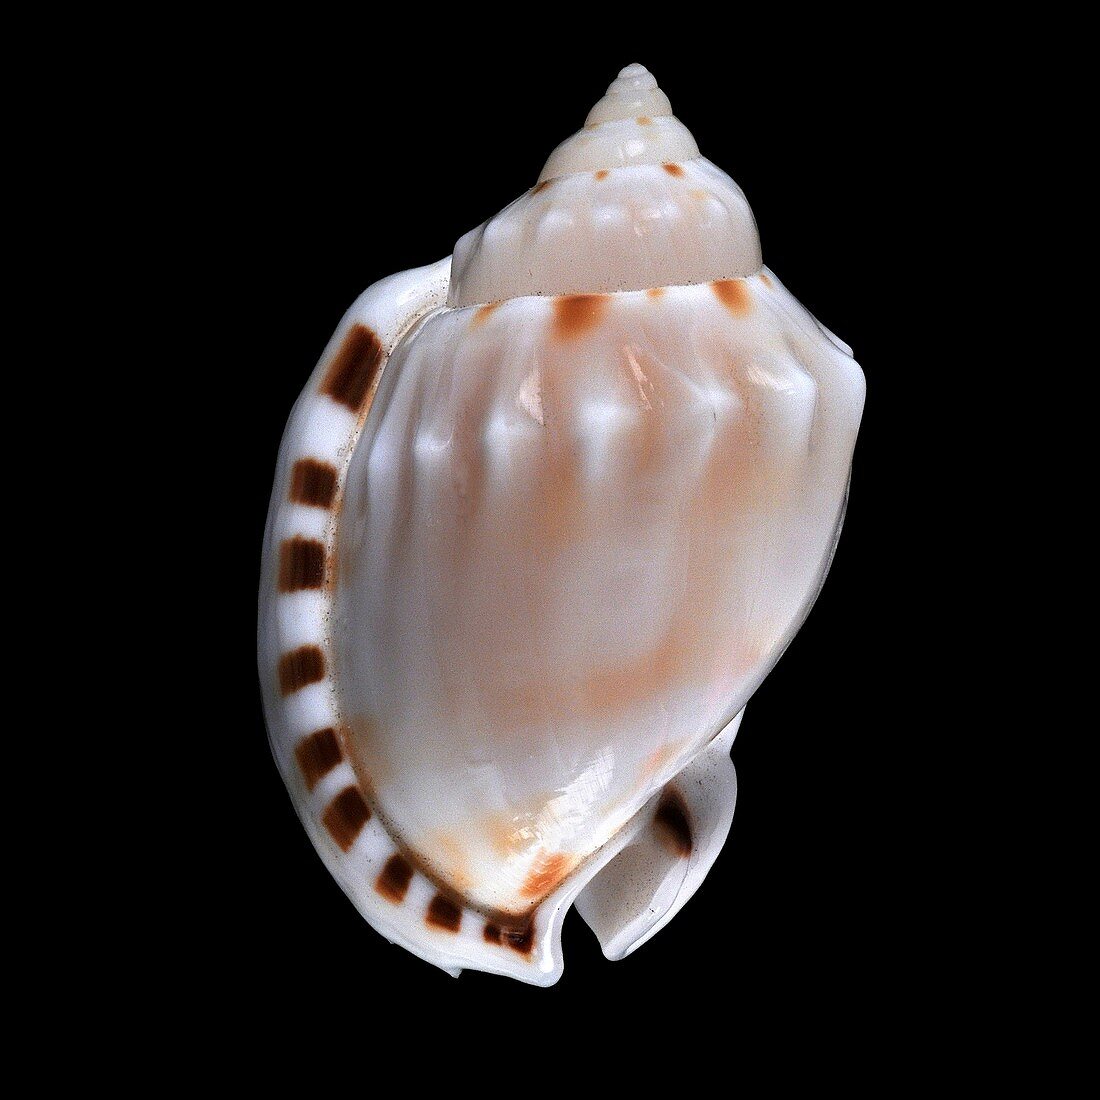 Heavy bonnet sea snail shell